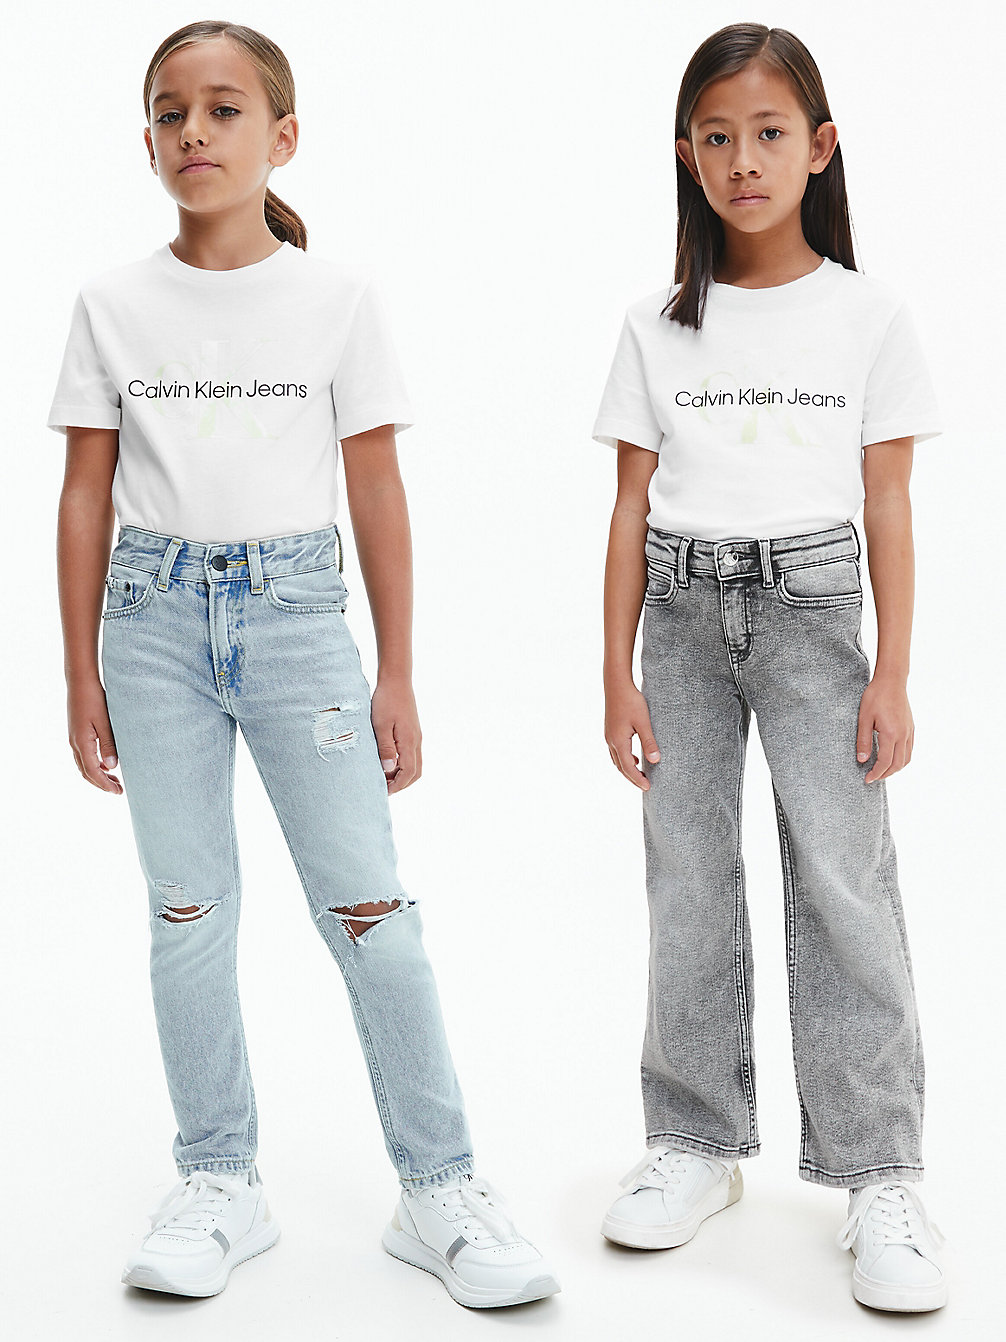 T-Shirt Unisex Con Logo > BRIGHT WHITE > undefined kids unisex > Calvin Klein